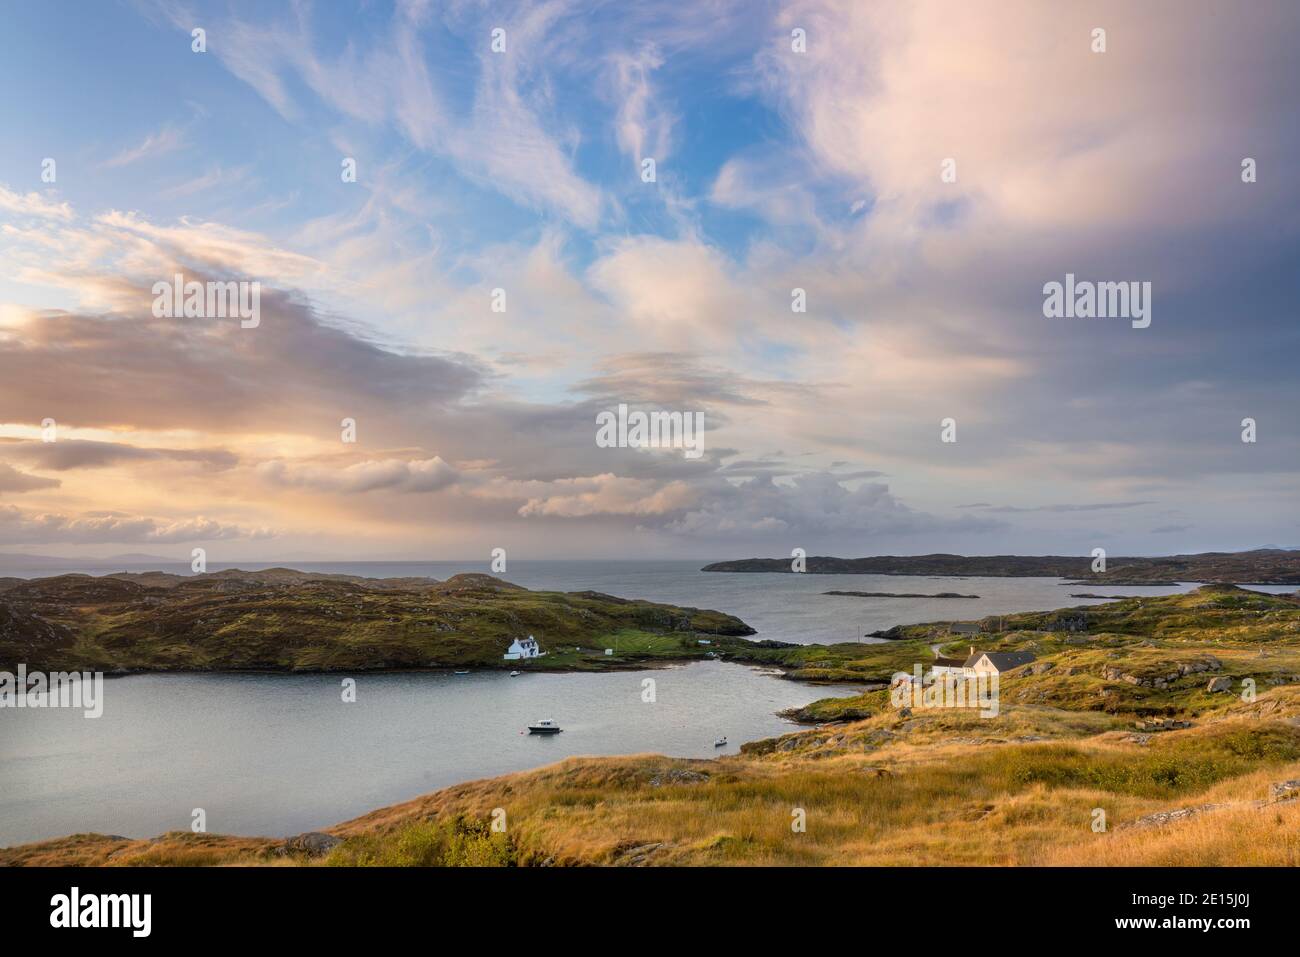 South Harris, Isle of Lewis and Harris, Scozia: Ripulire le nuvole della tempesta mattutina su un villaggio costiero isolato Foto Stock